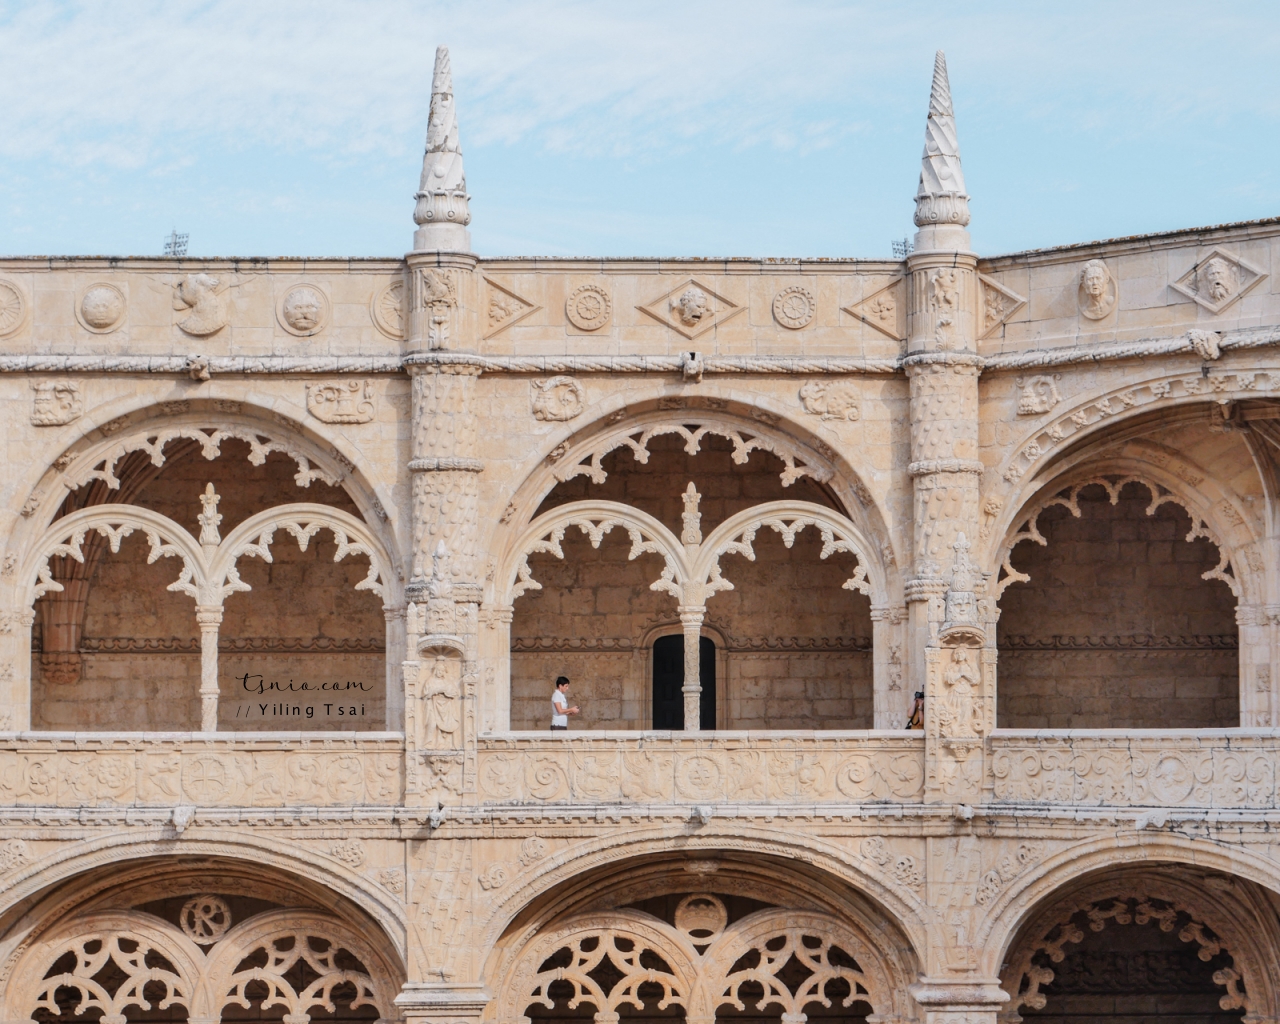 葡萄牙里斯本景點 Mosteiro dos Jerónimos 熱羅尼莫斯修道院 葡萄牙 16 世紀建築傑作